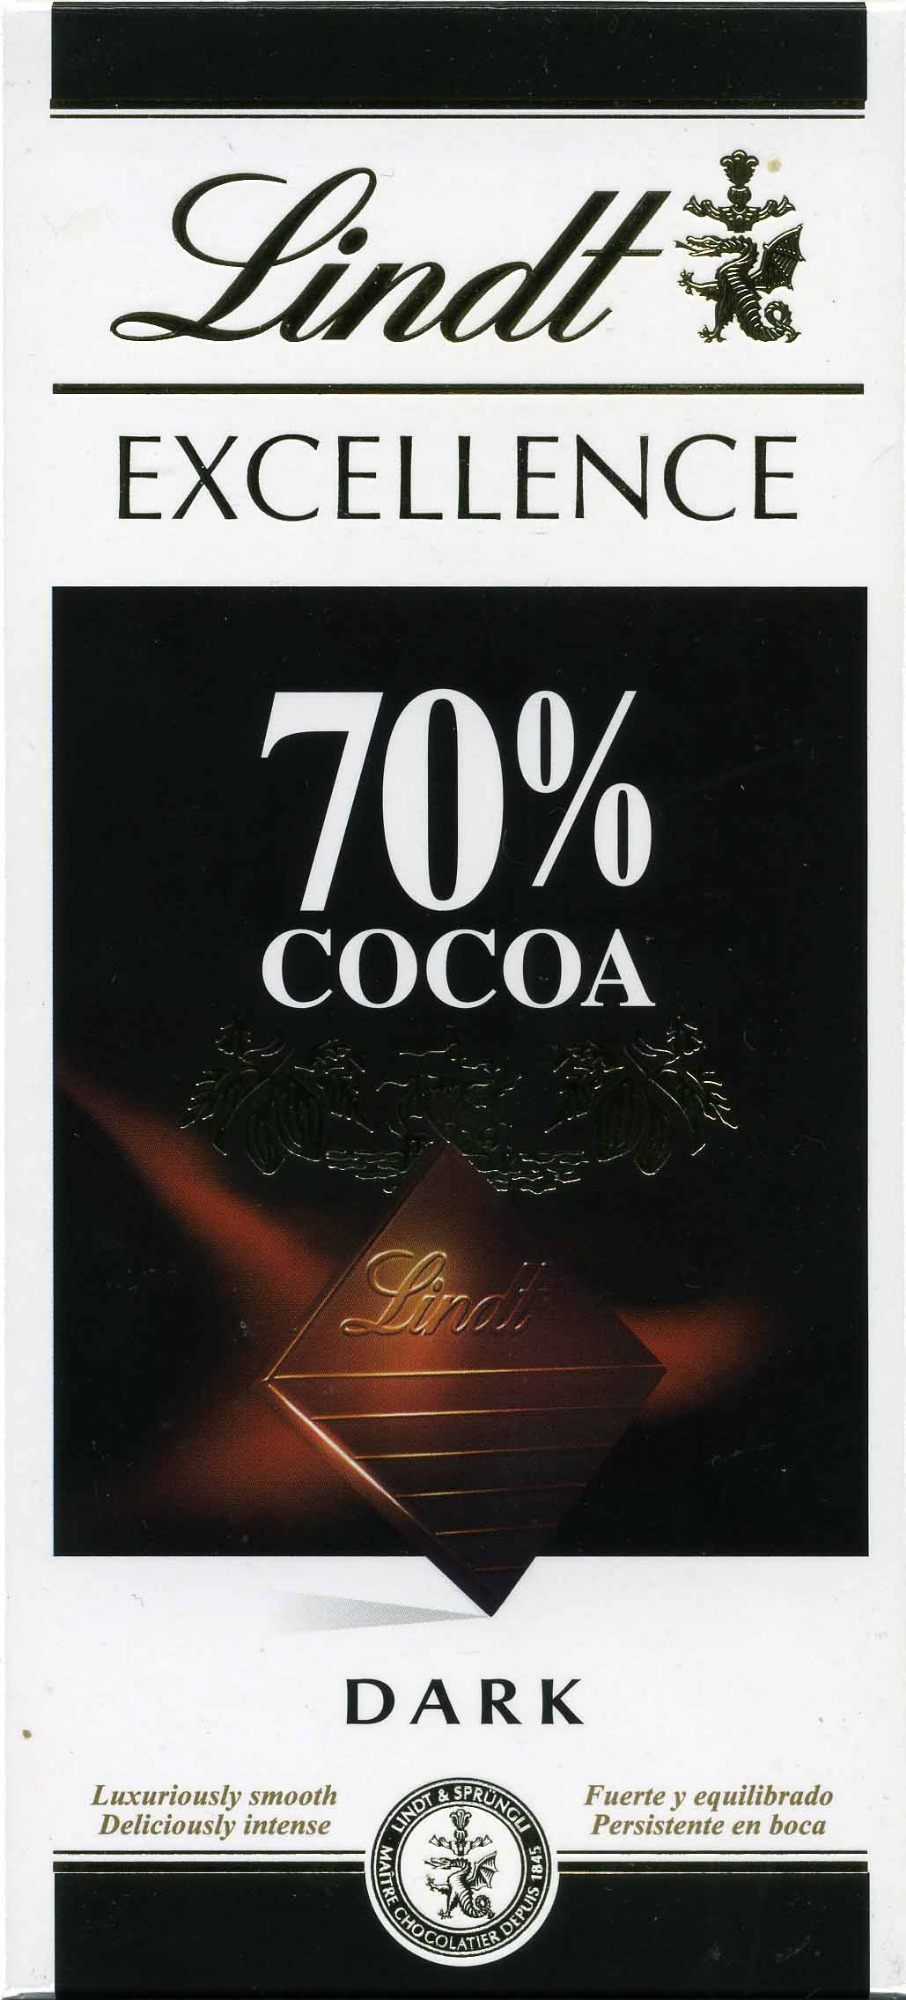 Schokolade 70% cocoa - Producte - en